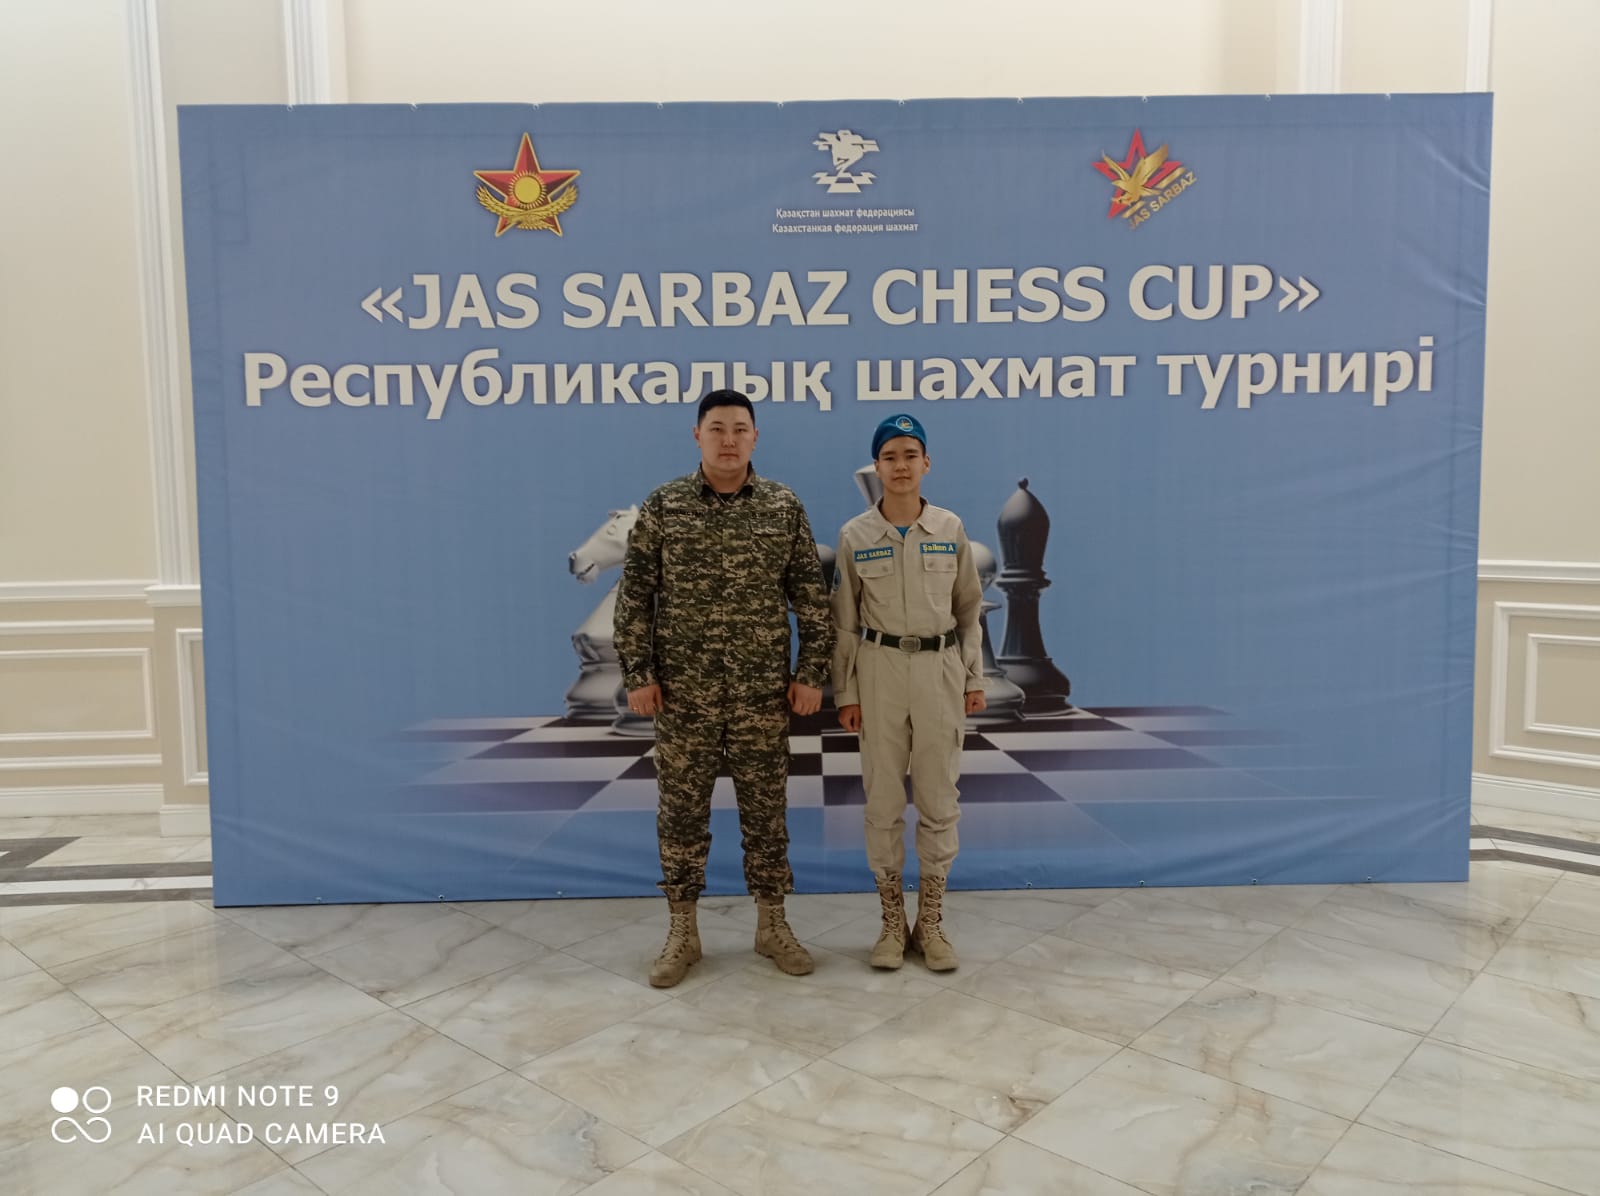 Республикалық "JÀS SARBAZ CHESS CUP" шахмат турнирі